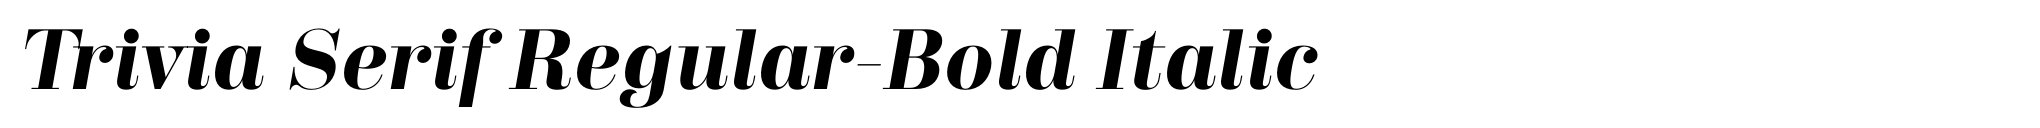 Trivia Serif Regular-Bold Italic image